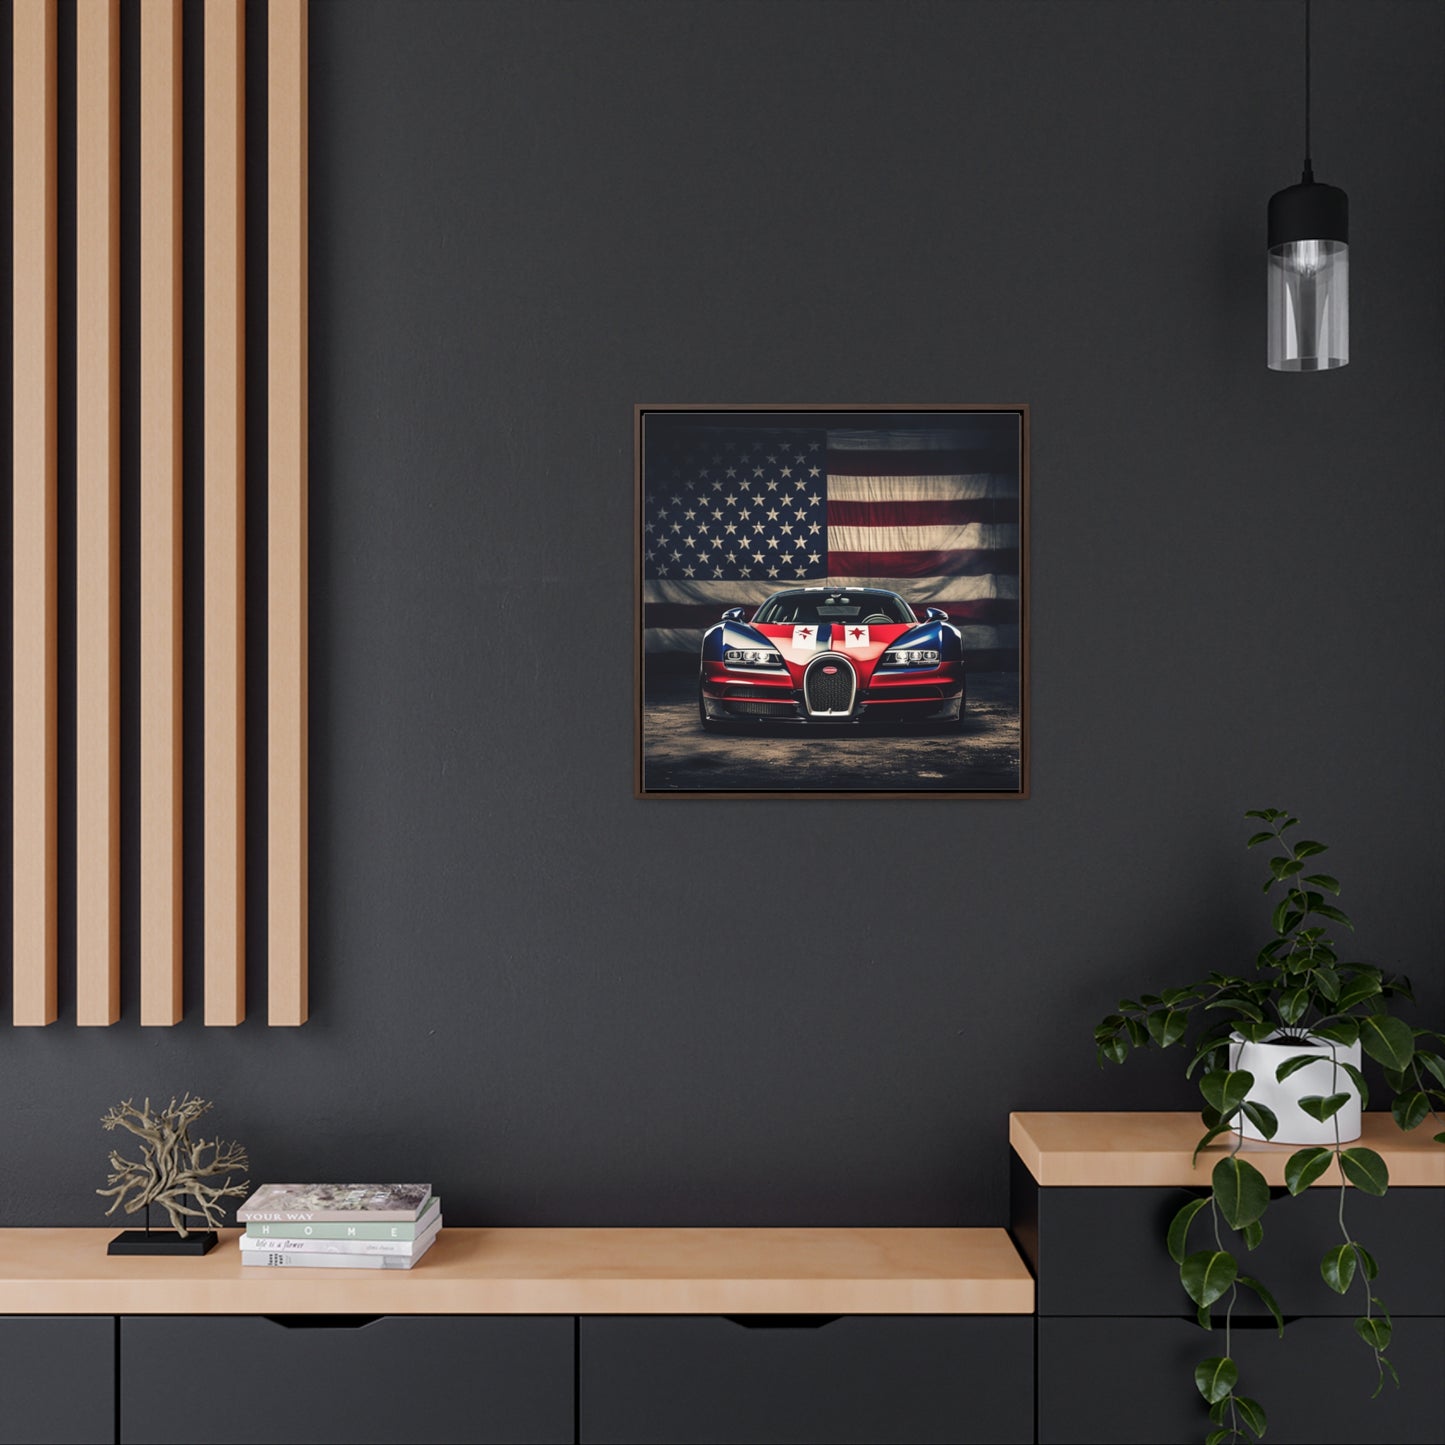 Gallery Canvas Wraps, Square Frame Bugatti American Flag 3